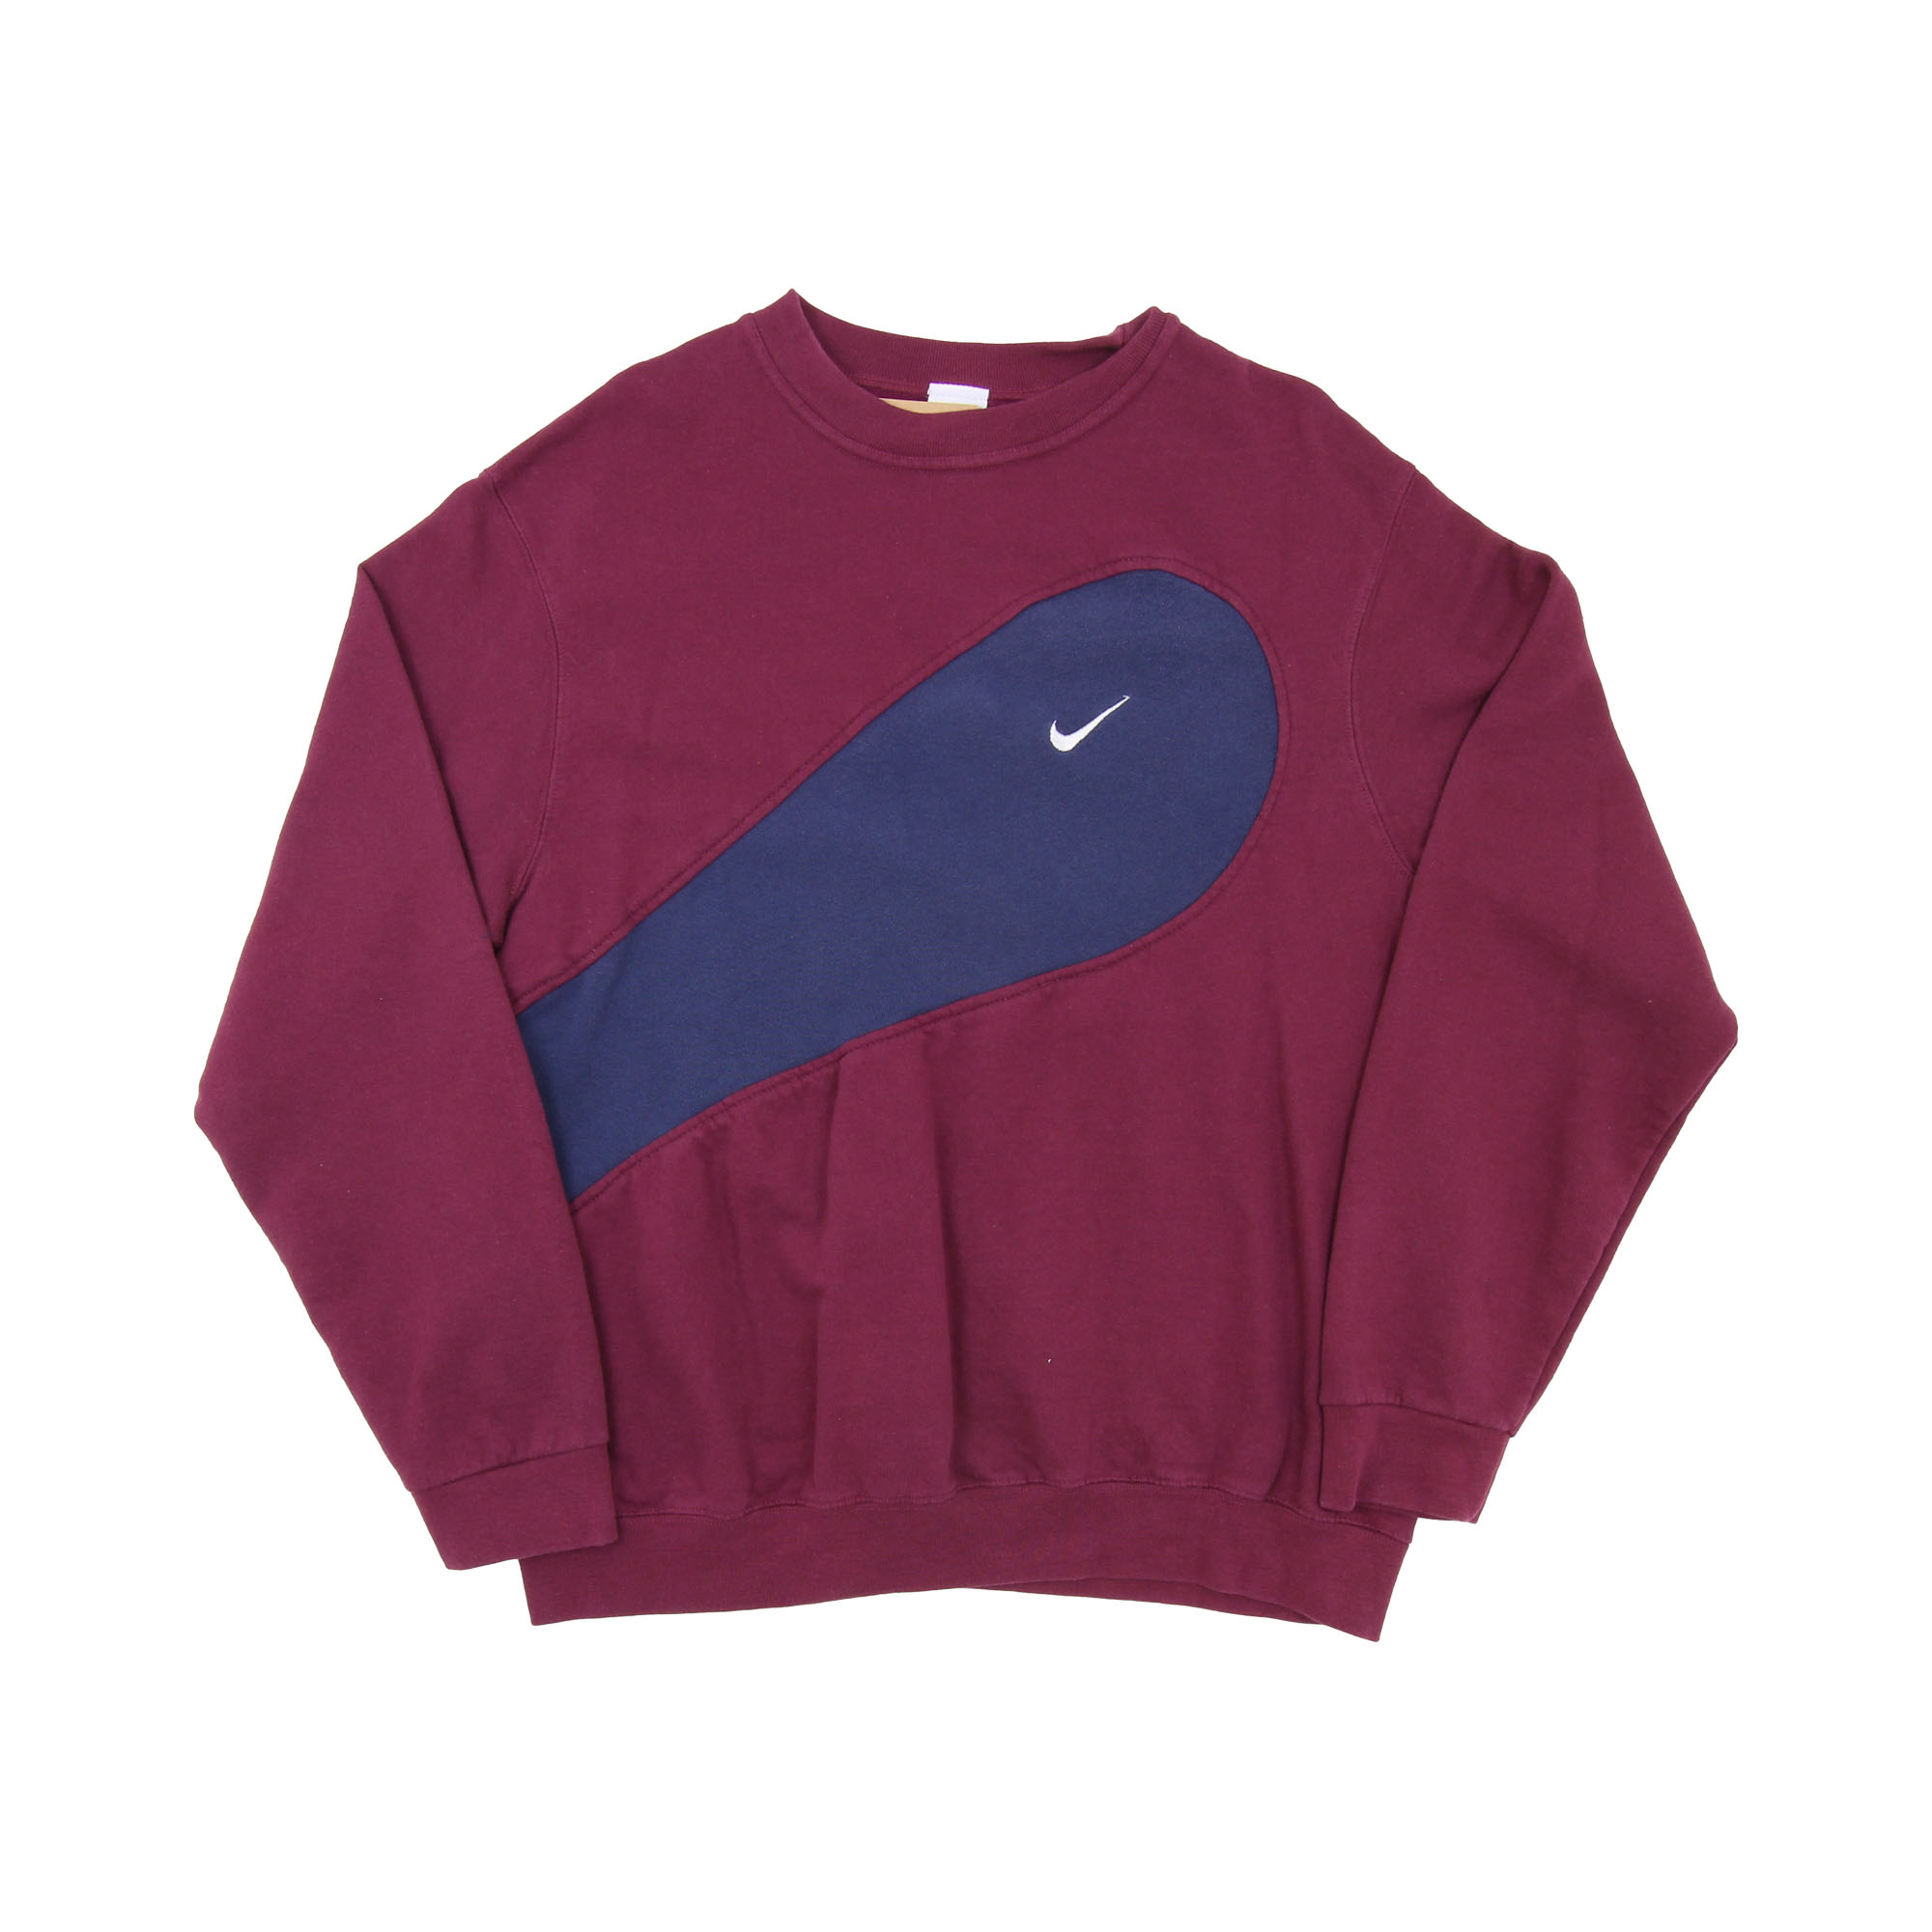 Nike Rework Sweatshirt -  L/XL